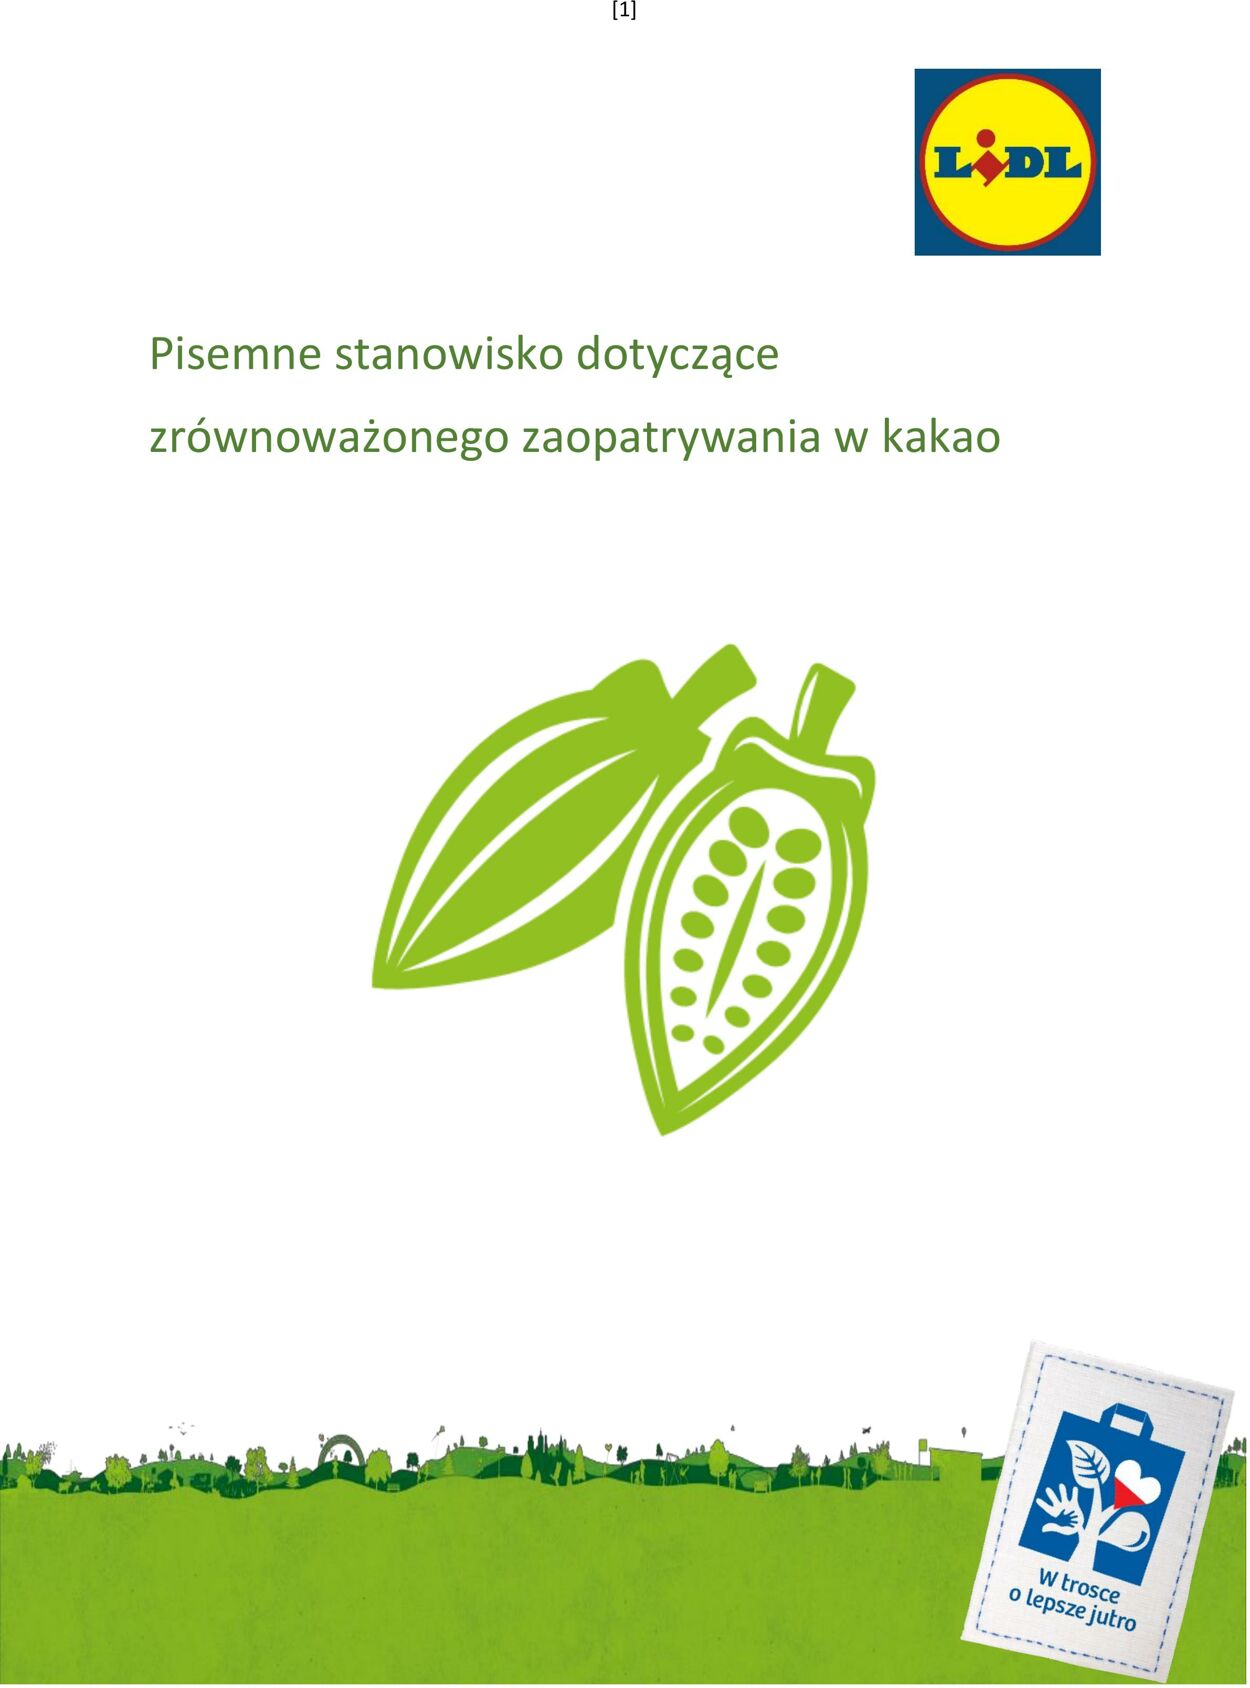 Gazetka Lidl - Stanowisko dotyczące zrównoważonego zaopatrywania w kakao 1 sty, 2019 - 31 gru, 2030